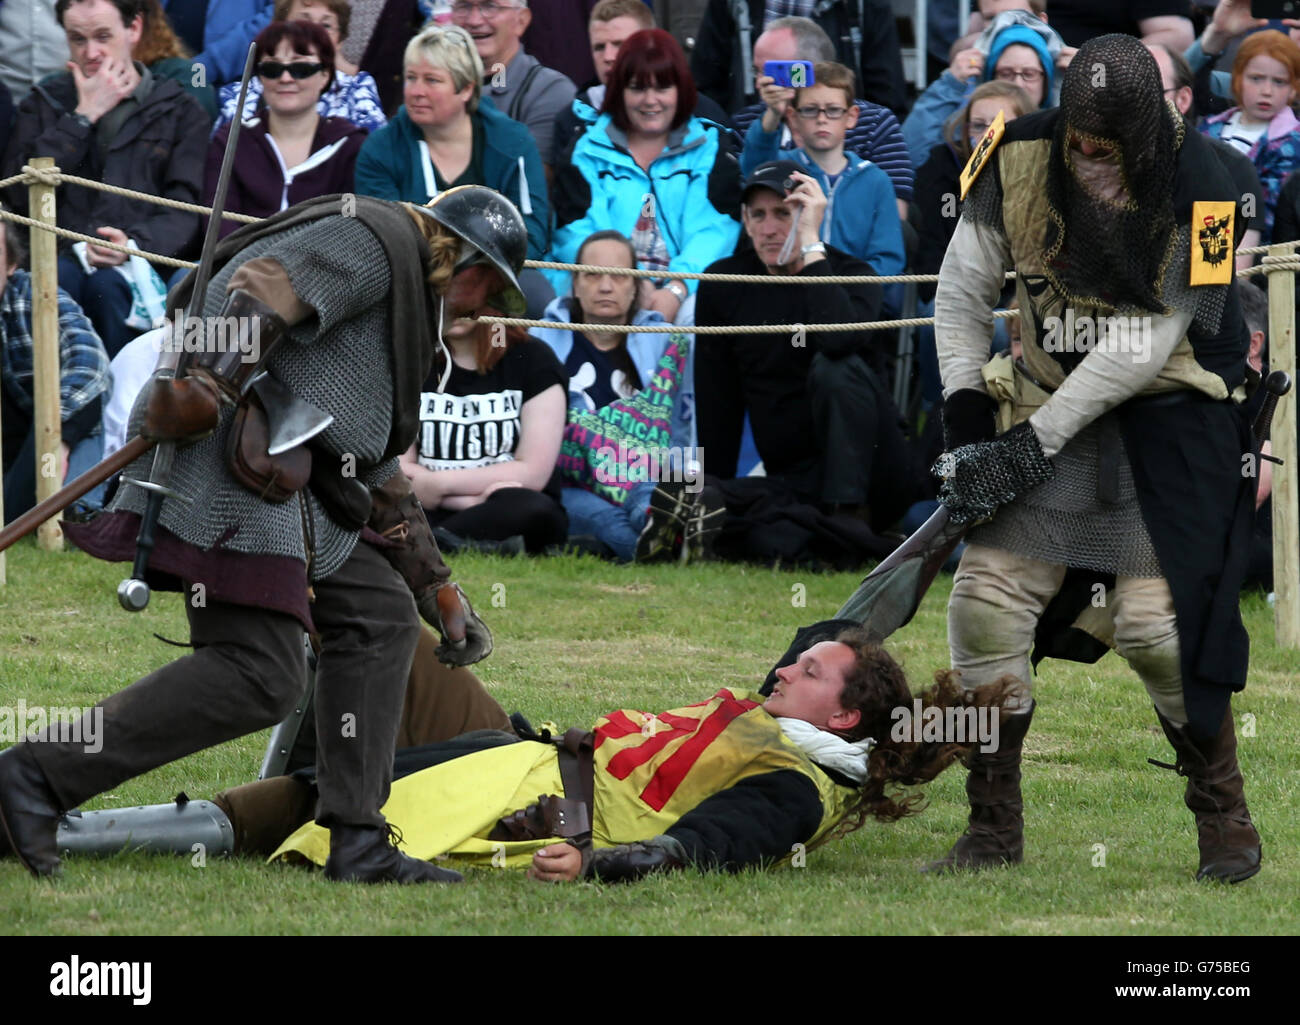 Die Schlacht von Bannockburn Nachinszenierung Performance beim Bannockburn Live Event in Bannockburn, das den 700. Jahrestag der Schlacht feiert. Stockfoto